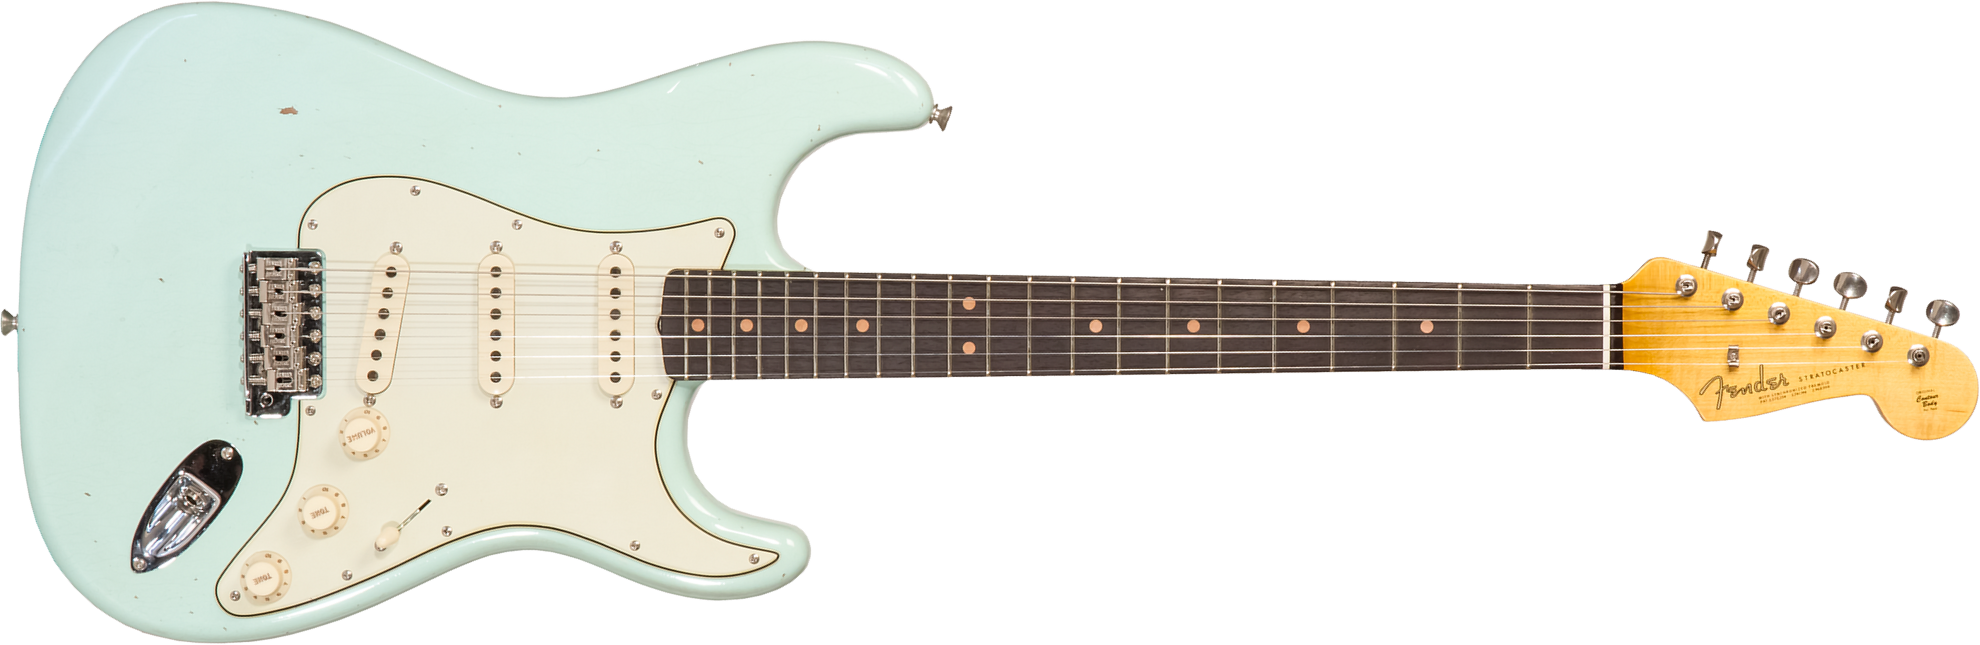 Fender Custom Shop Strat 1964 3s Trem Rw #cz570381 - Journeyman Relic Aged Surf Green - Guitare Électrique Forme Str - Main picture